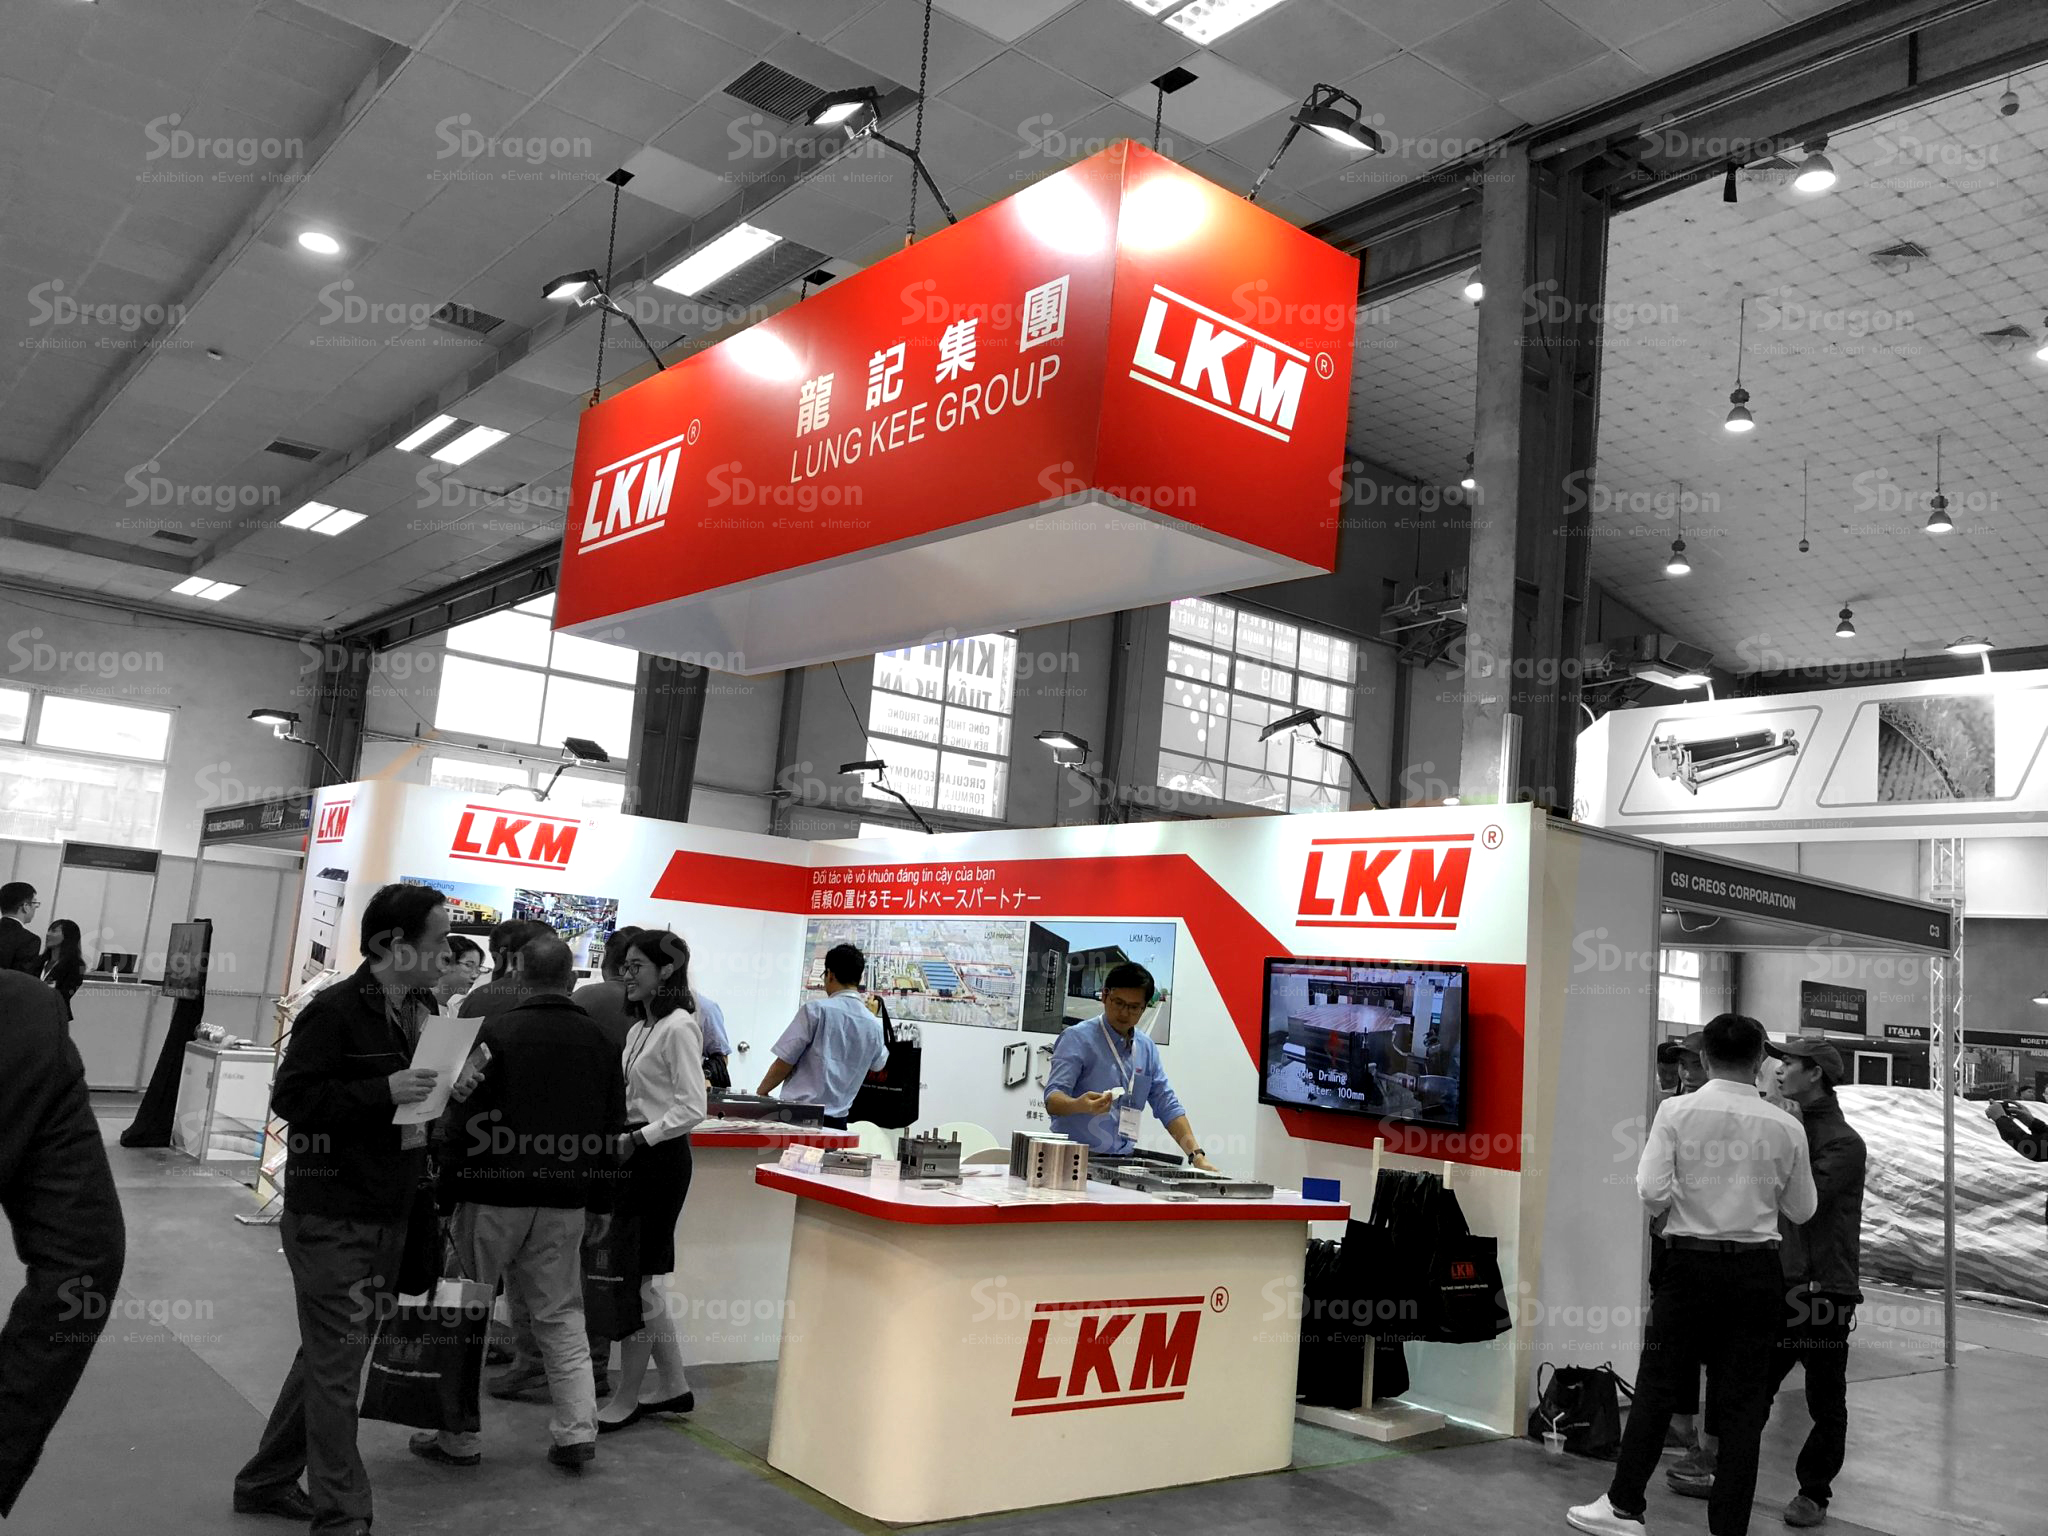 SDragon thi công thiết kế gian hàng trọn gói cho công ty LKM